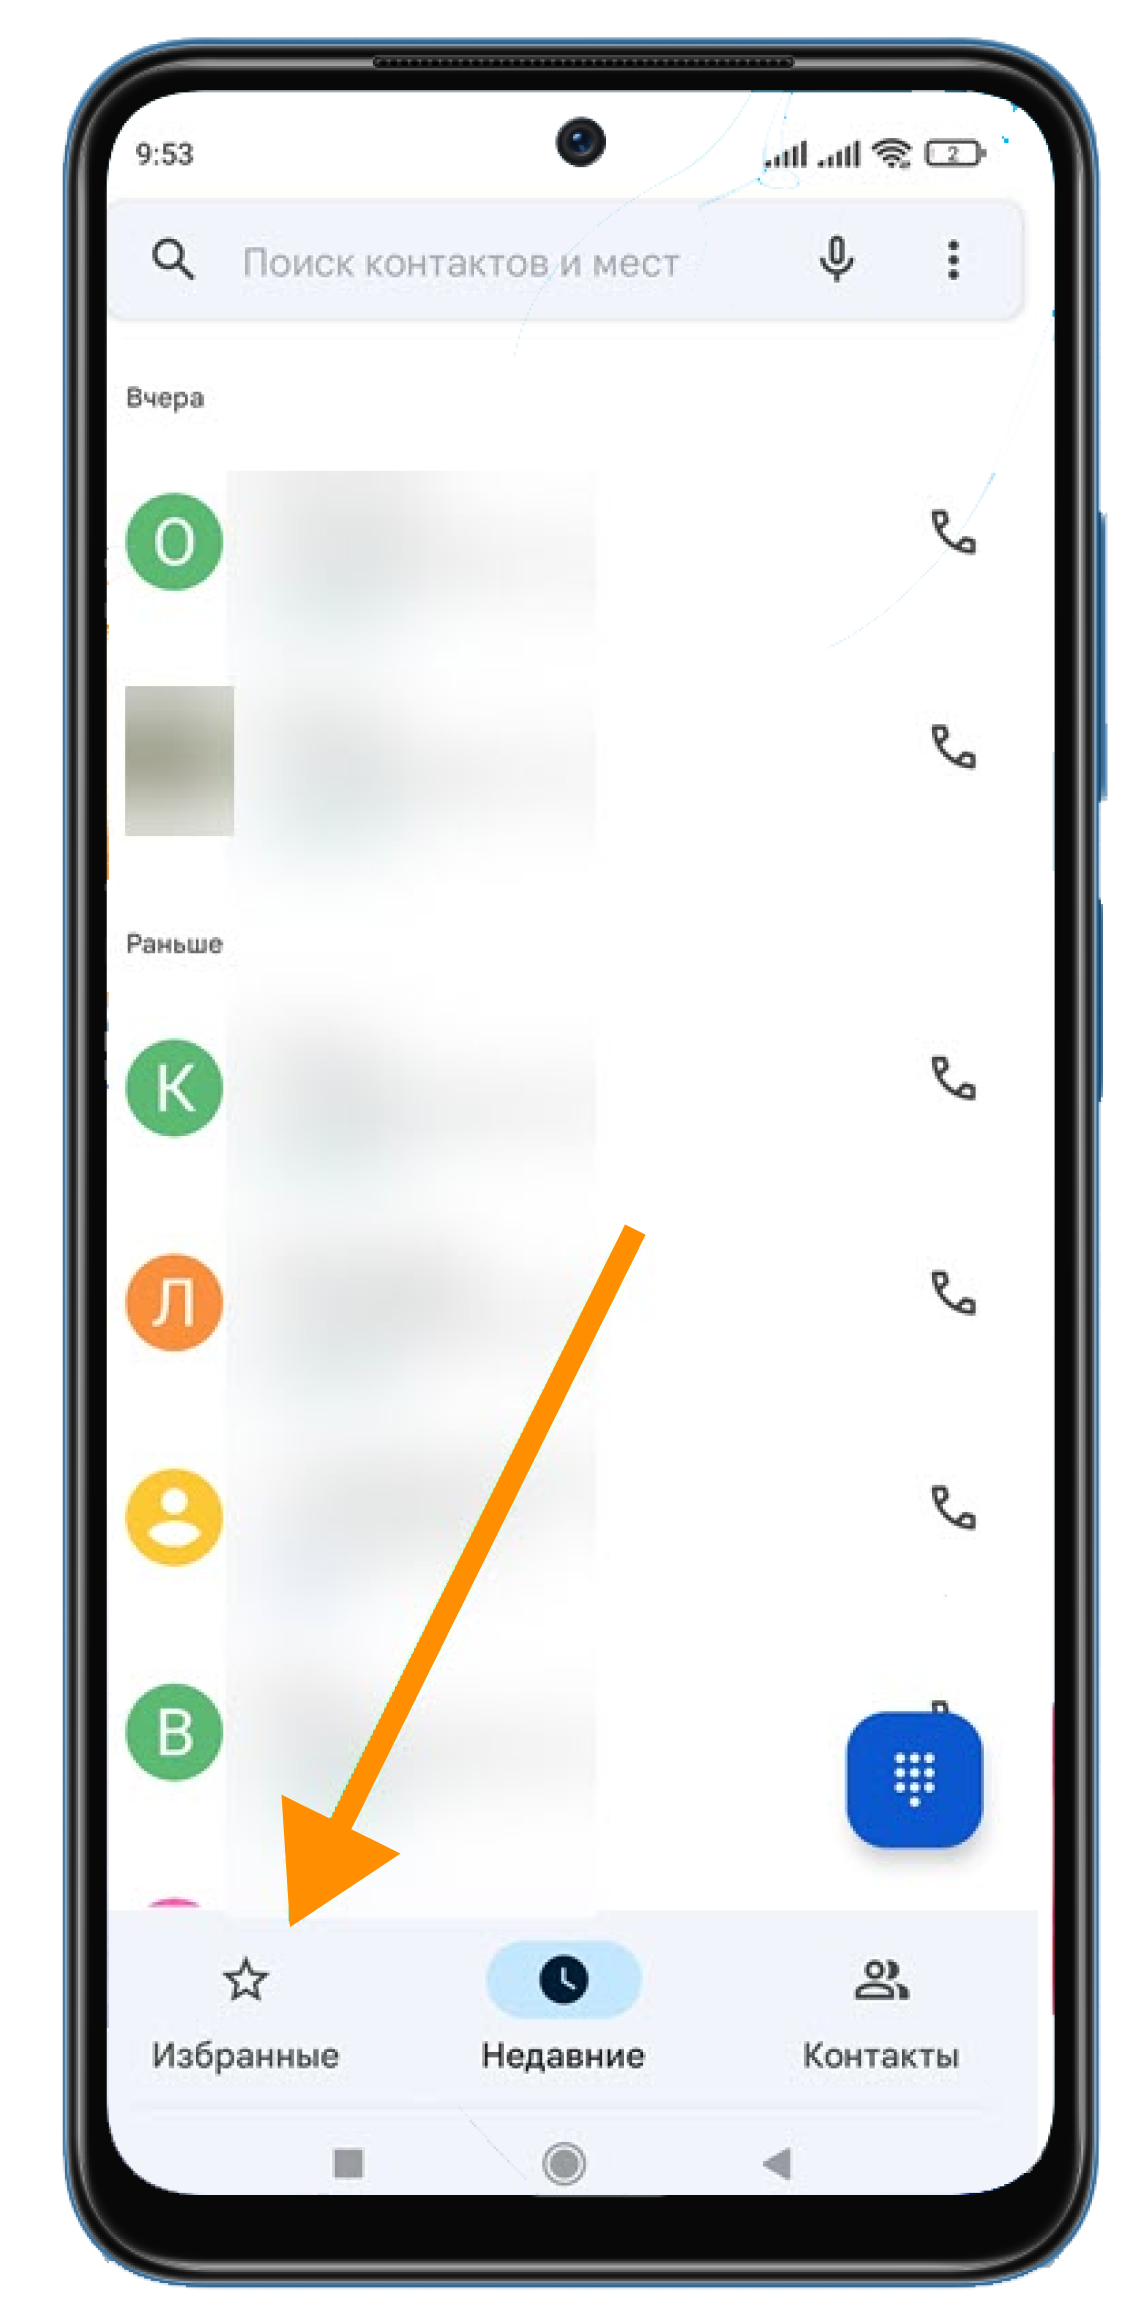 Как на Android в режиме «Не беспокоить» разрешить звонки/SMS избранным контактам